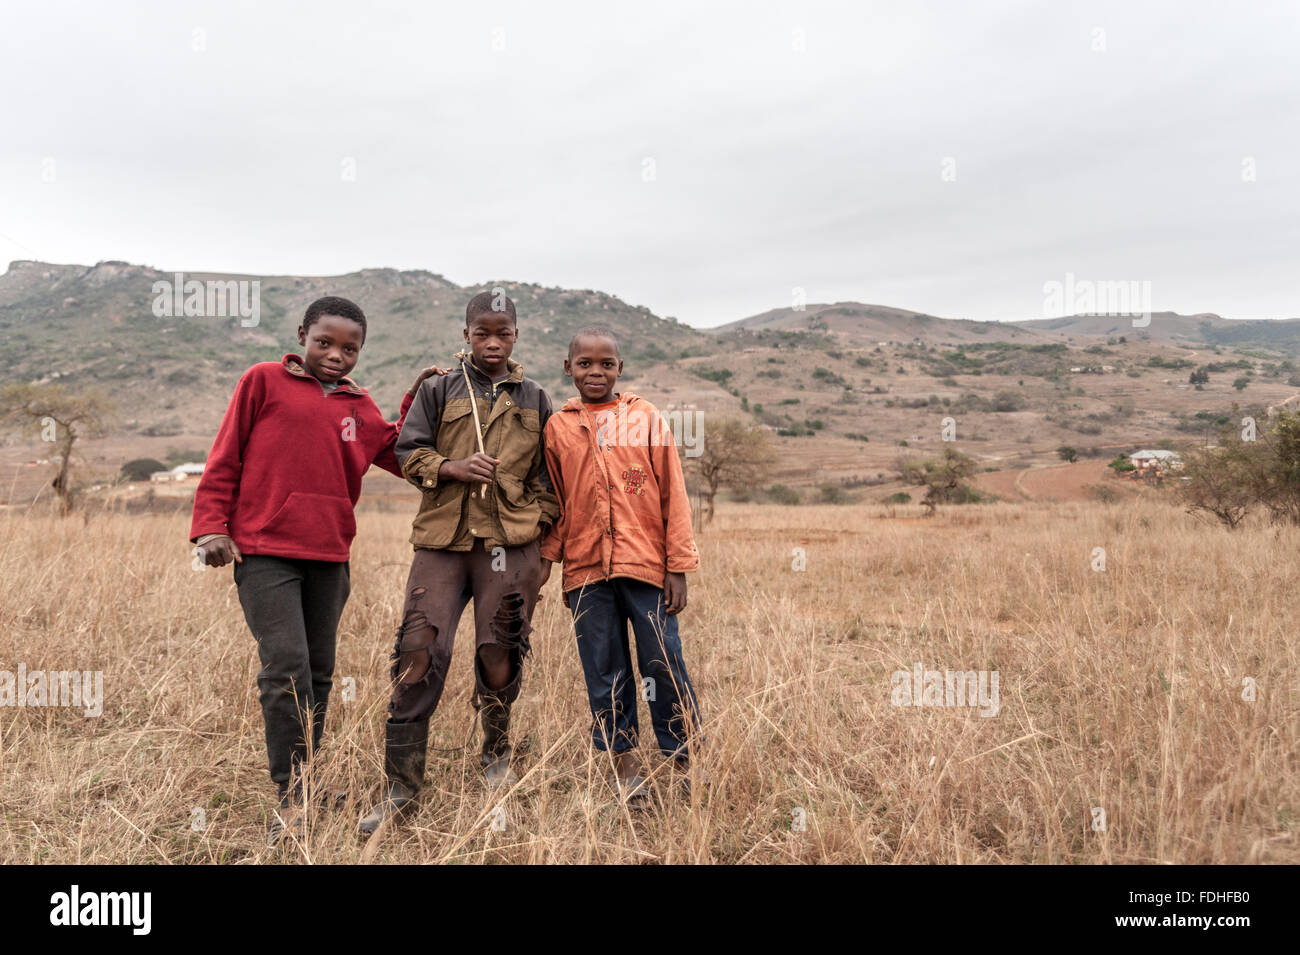 Drei junge Burschen stehen in einem Feld in der Hhohho Region von Swasiland, Afrika. Stockfoto